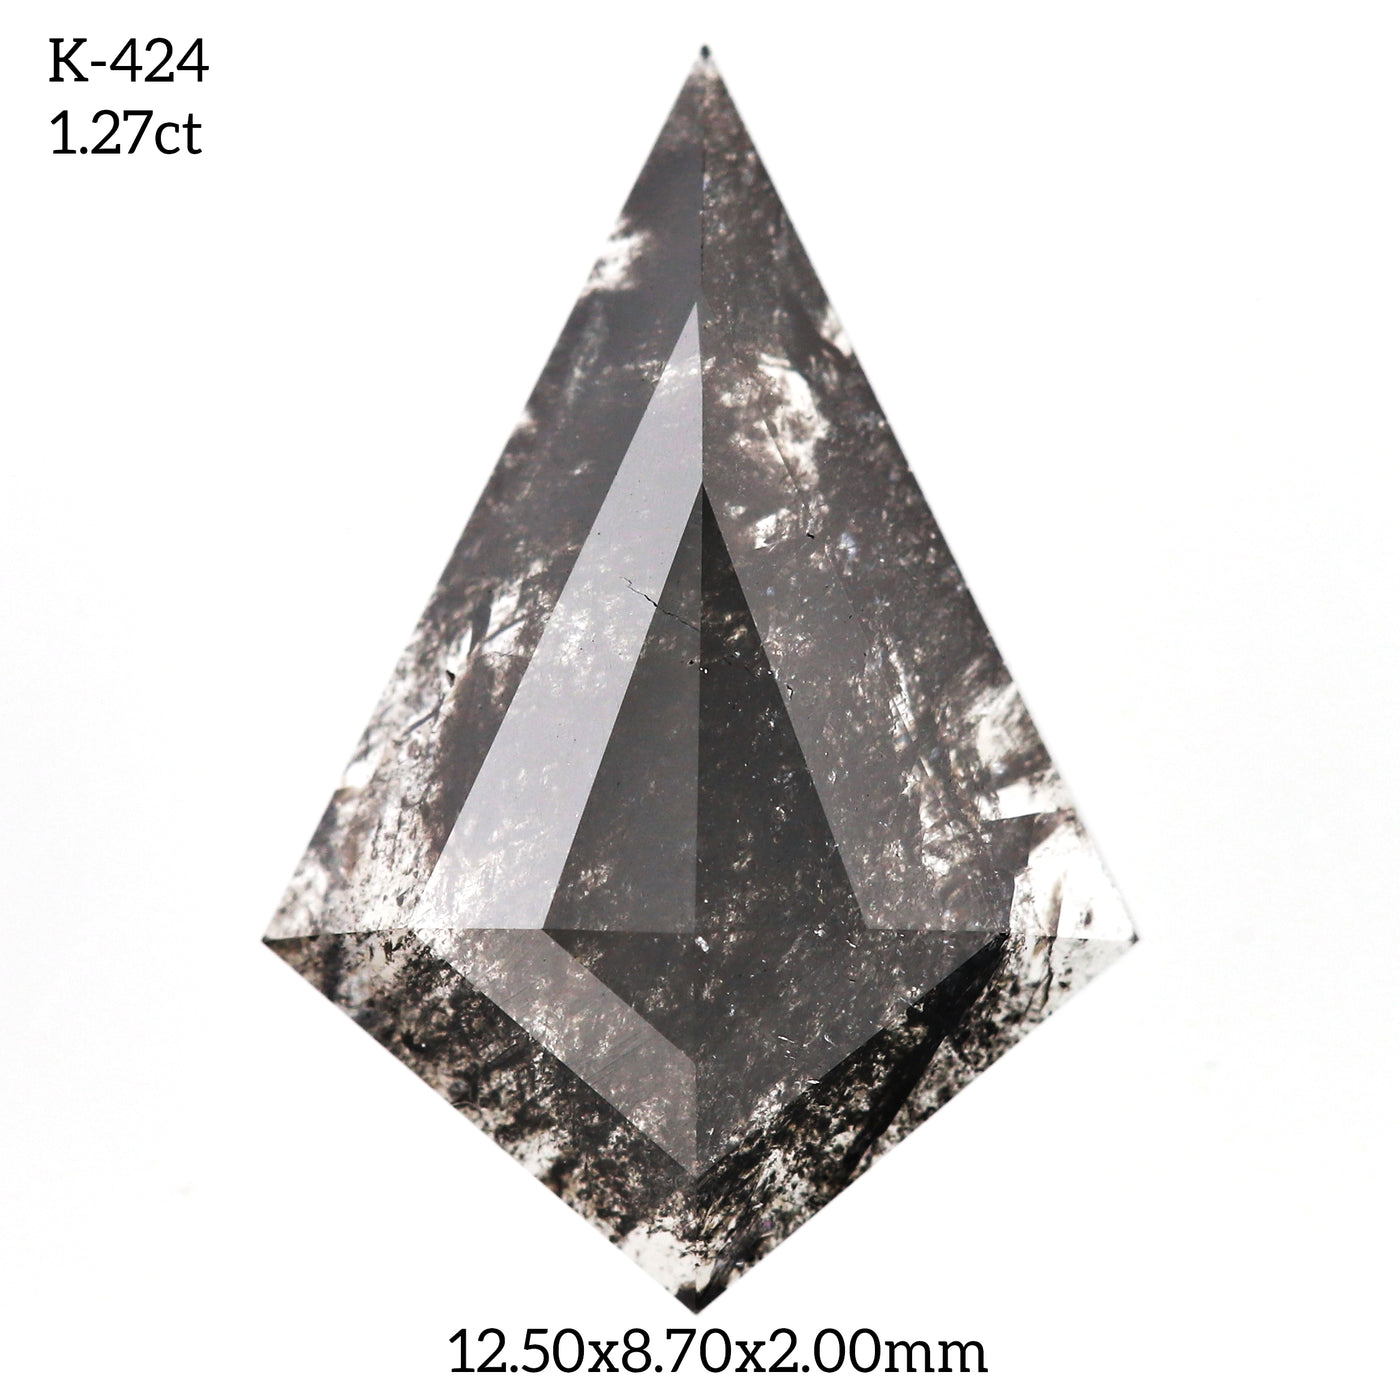 K424 - Salt and pepper kite diamond